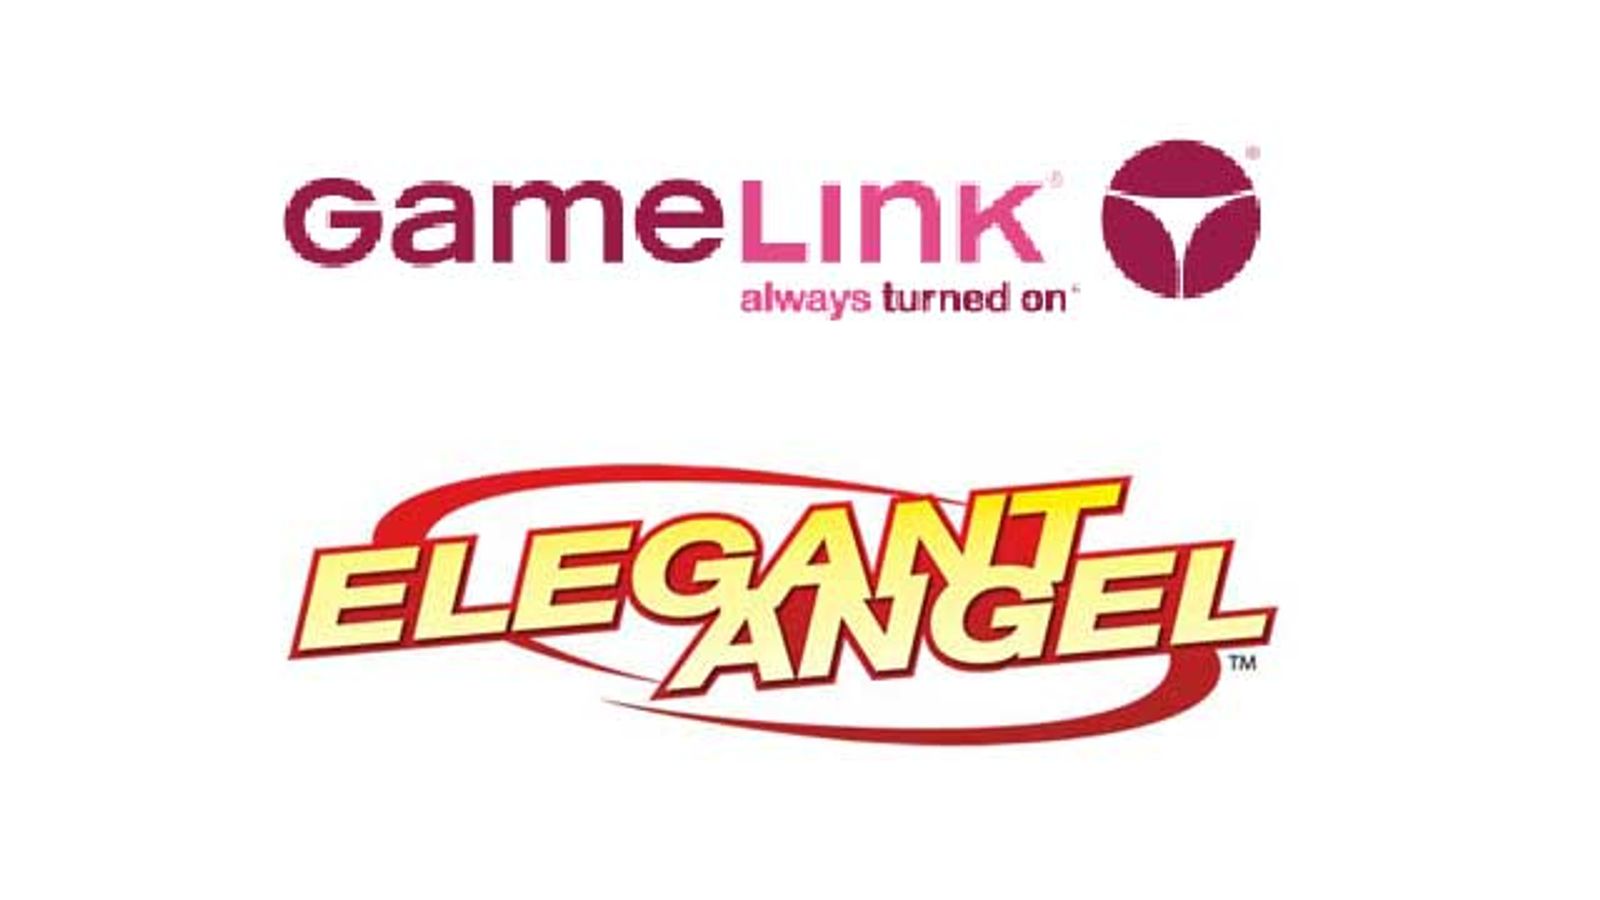 GameLink, Elegant Angel Team Up on ‘Gangbanged 6’ Release